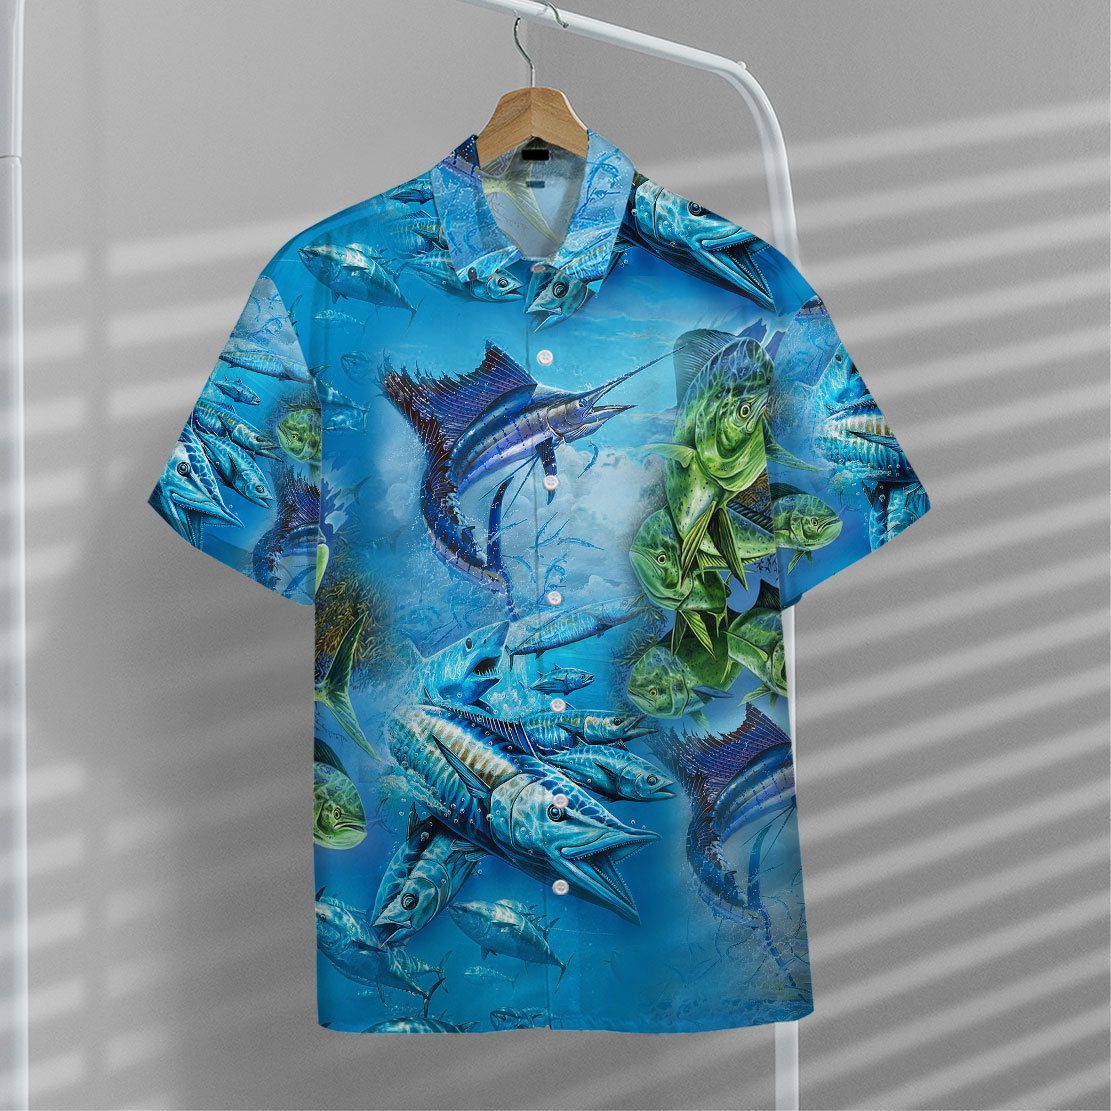 Gearhuman 3D Sea Fishing Hawaii Shirt, Short Sleeve Shirt / 5XL